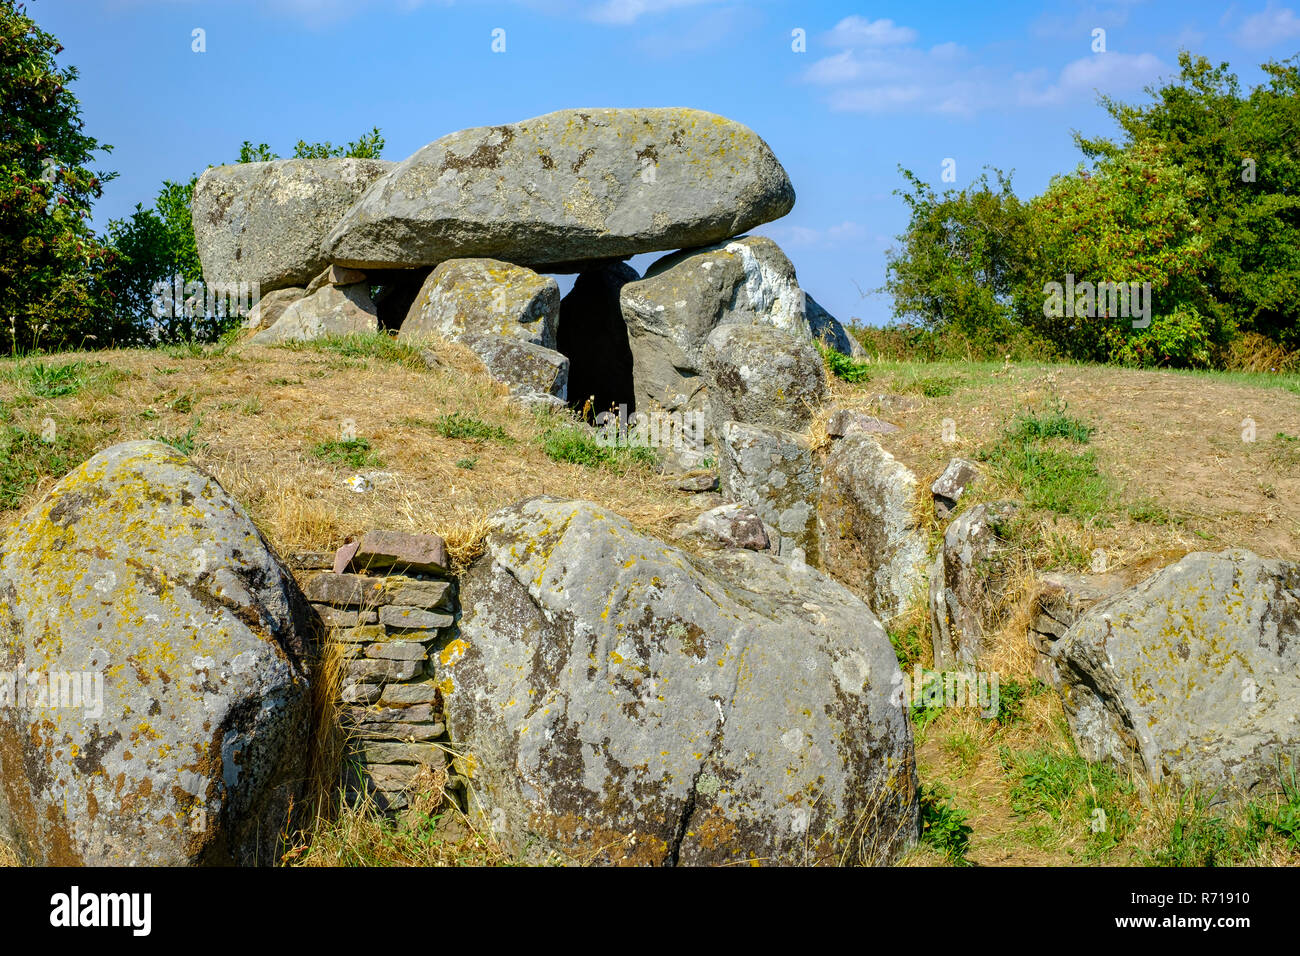 Le grand dolmen mégalithique tombe d'Sprove Runddysse sur la partie occidentale de l'île de Moen, le Danemark, la Scandinavie, l'Europe. Banque D'Images